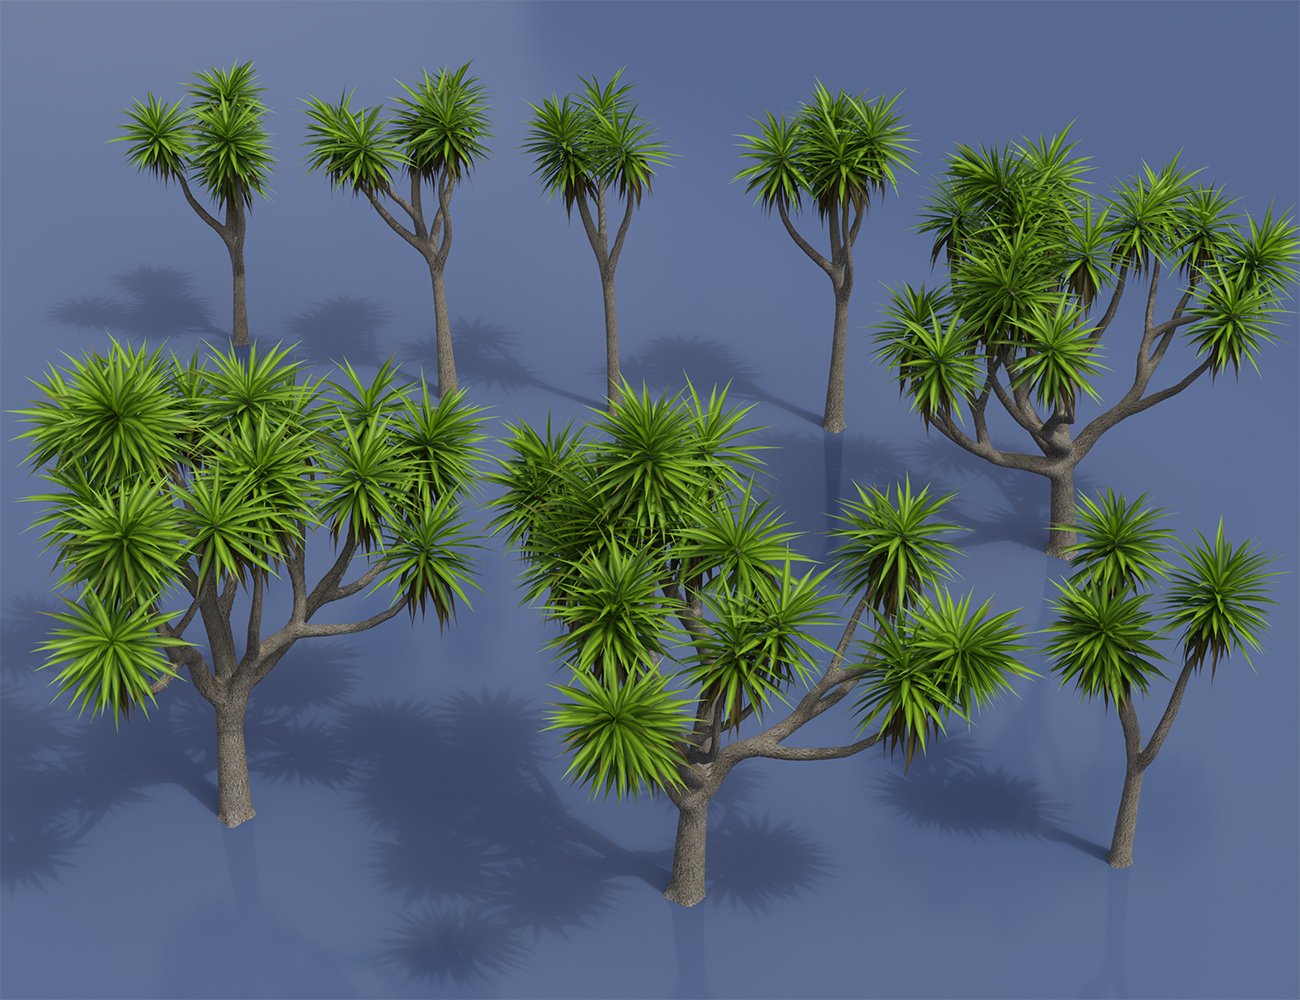 Predatron Cabbage Palm Trees by: Predatron, 3D Models by Daz 3D